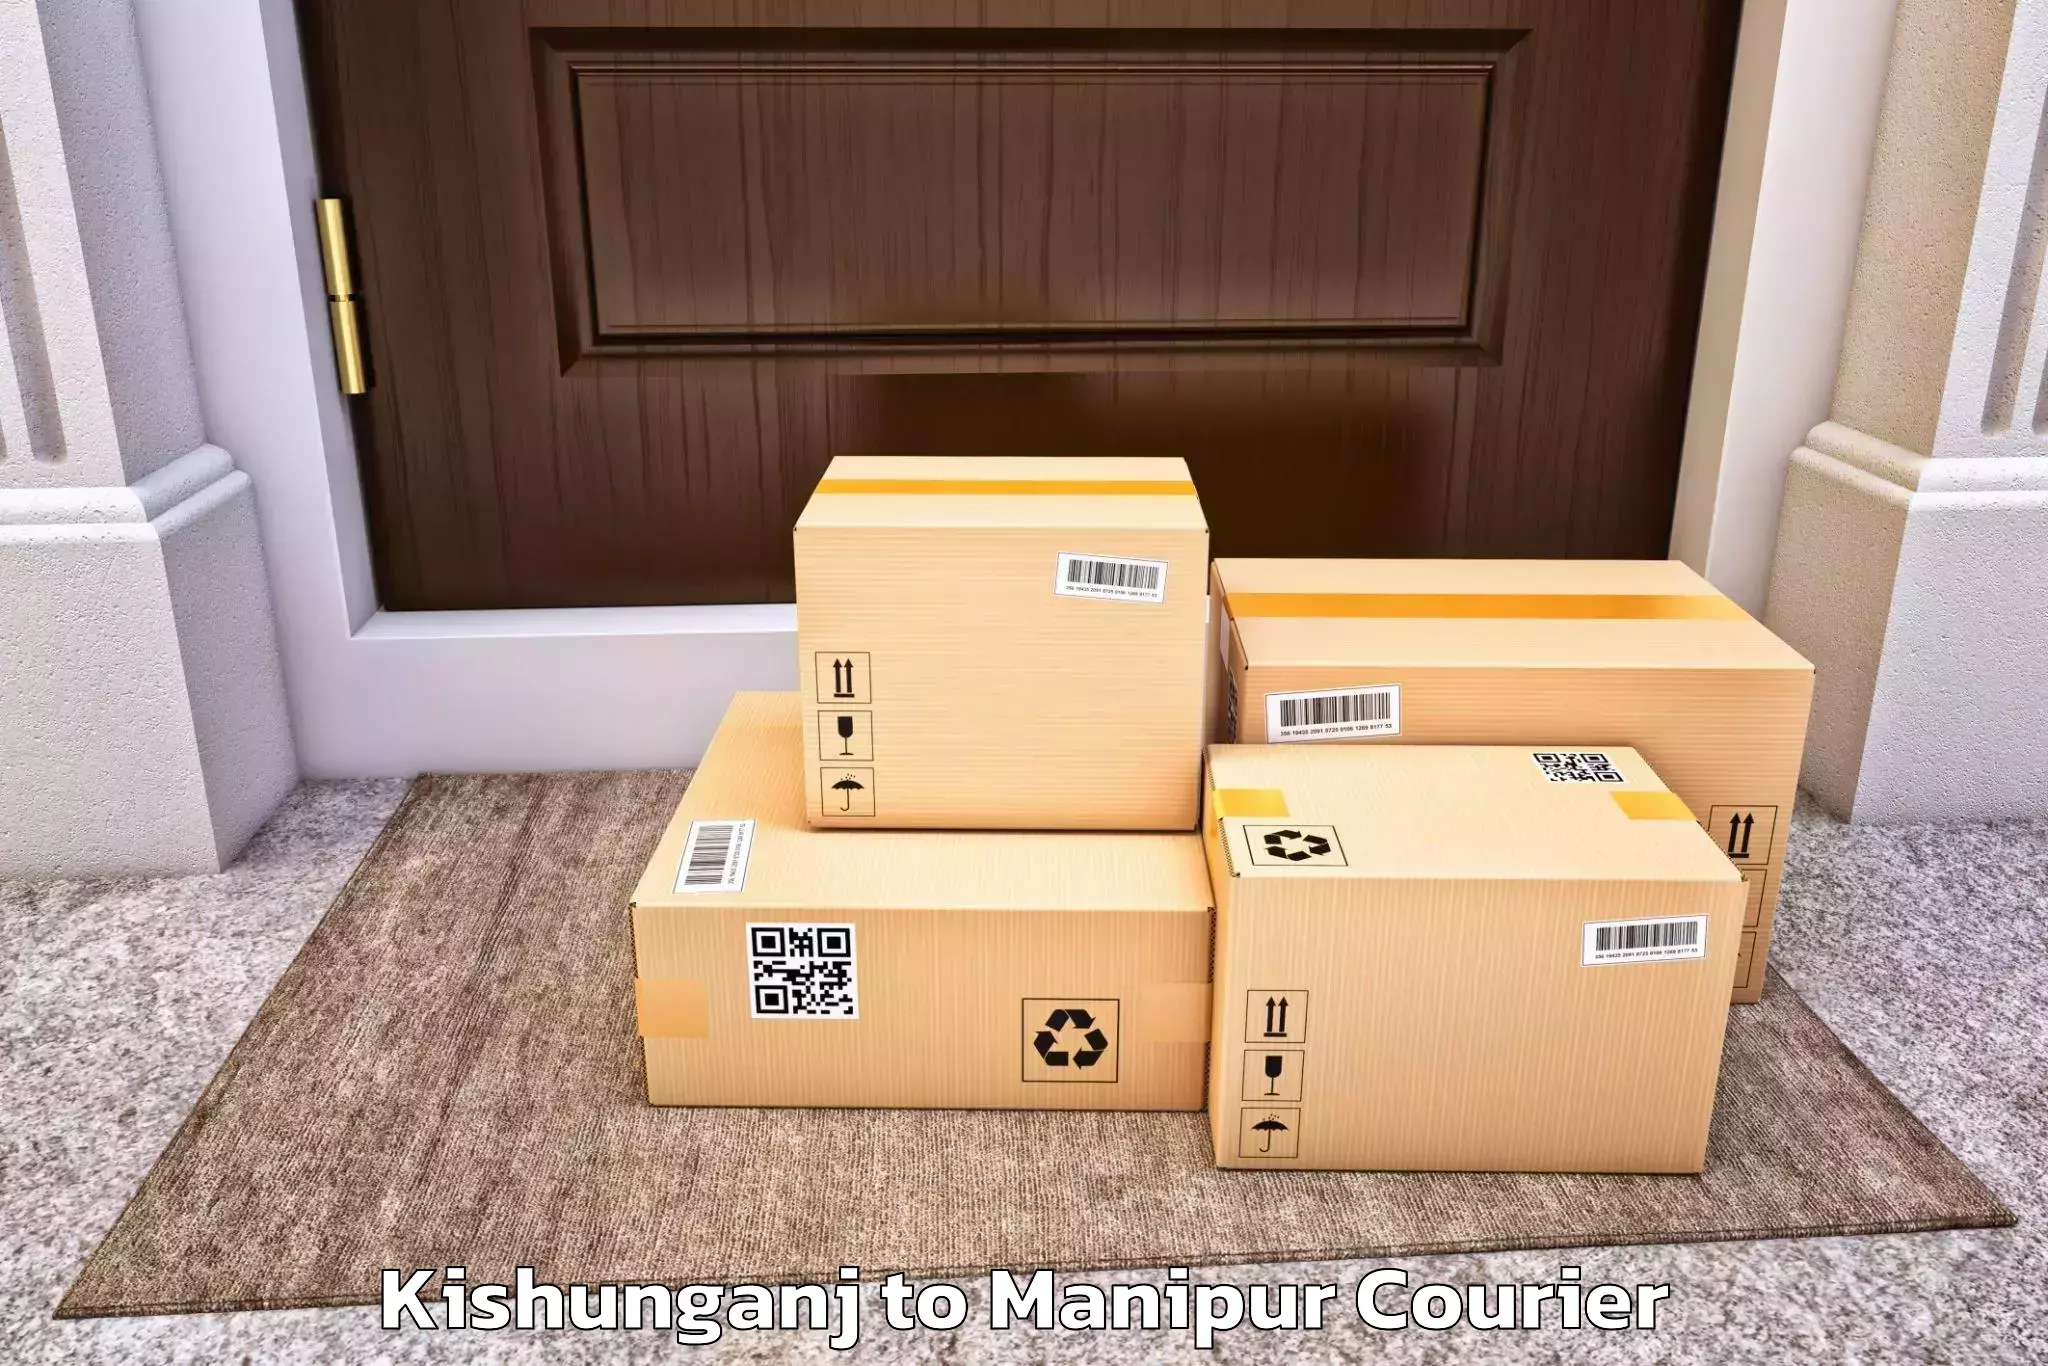 Furniture moving experts Kishunganj to Jiribam